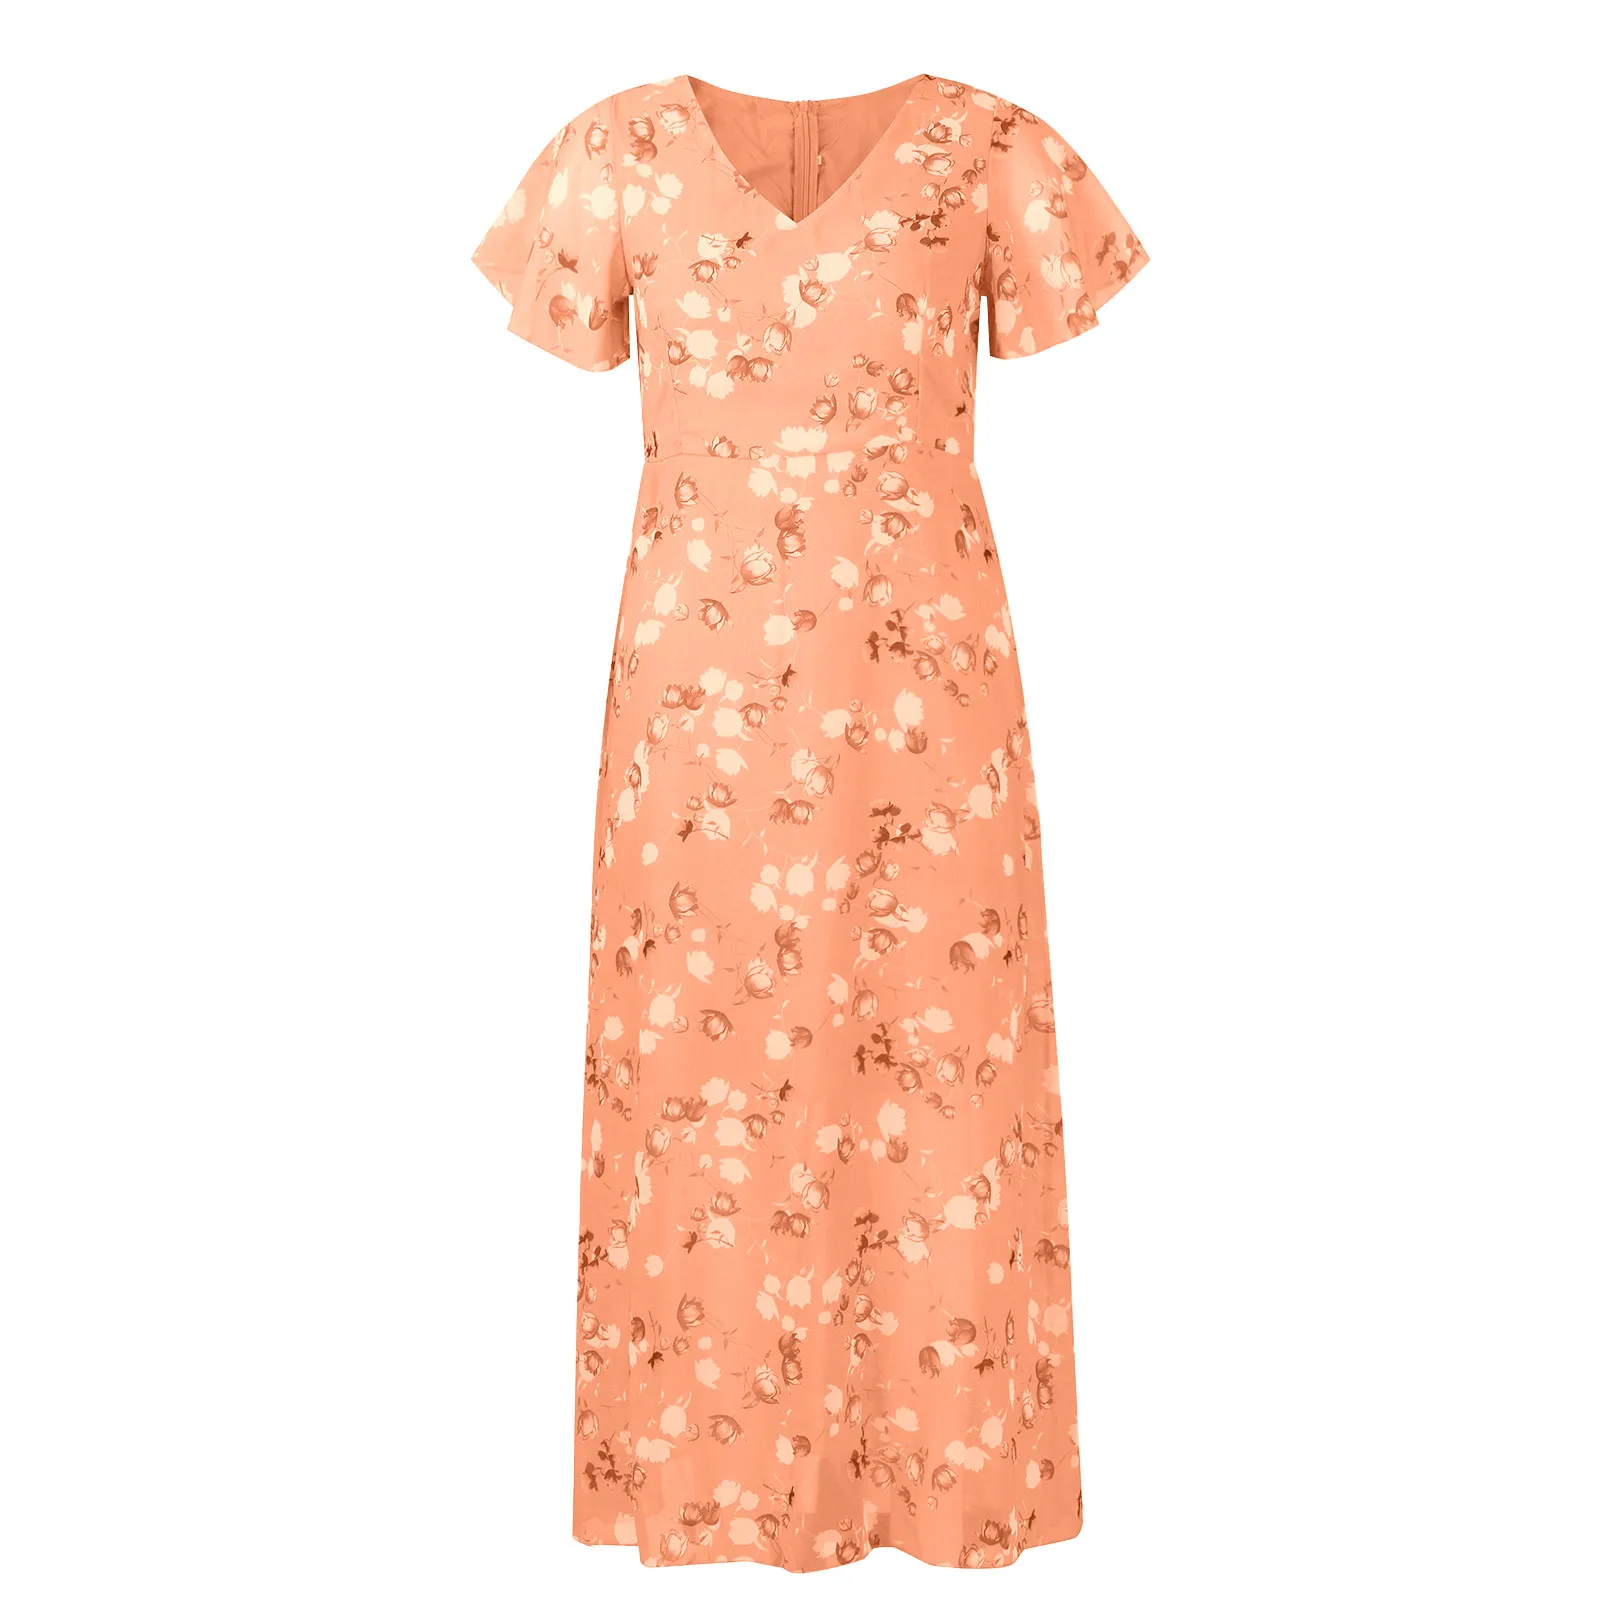 

Женское платье с цветочным принтом, летнее Повседневное платье для свидания, нежное длинное платье с коротким рукавом и цветочным узором, шифоновое платье с оборками и V-образным вырезом